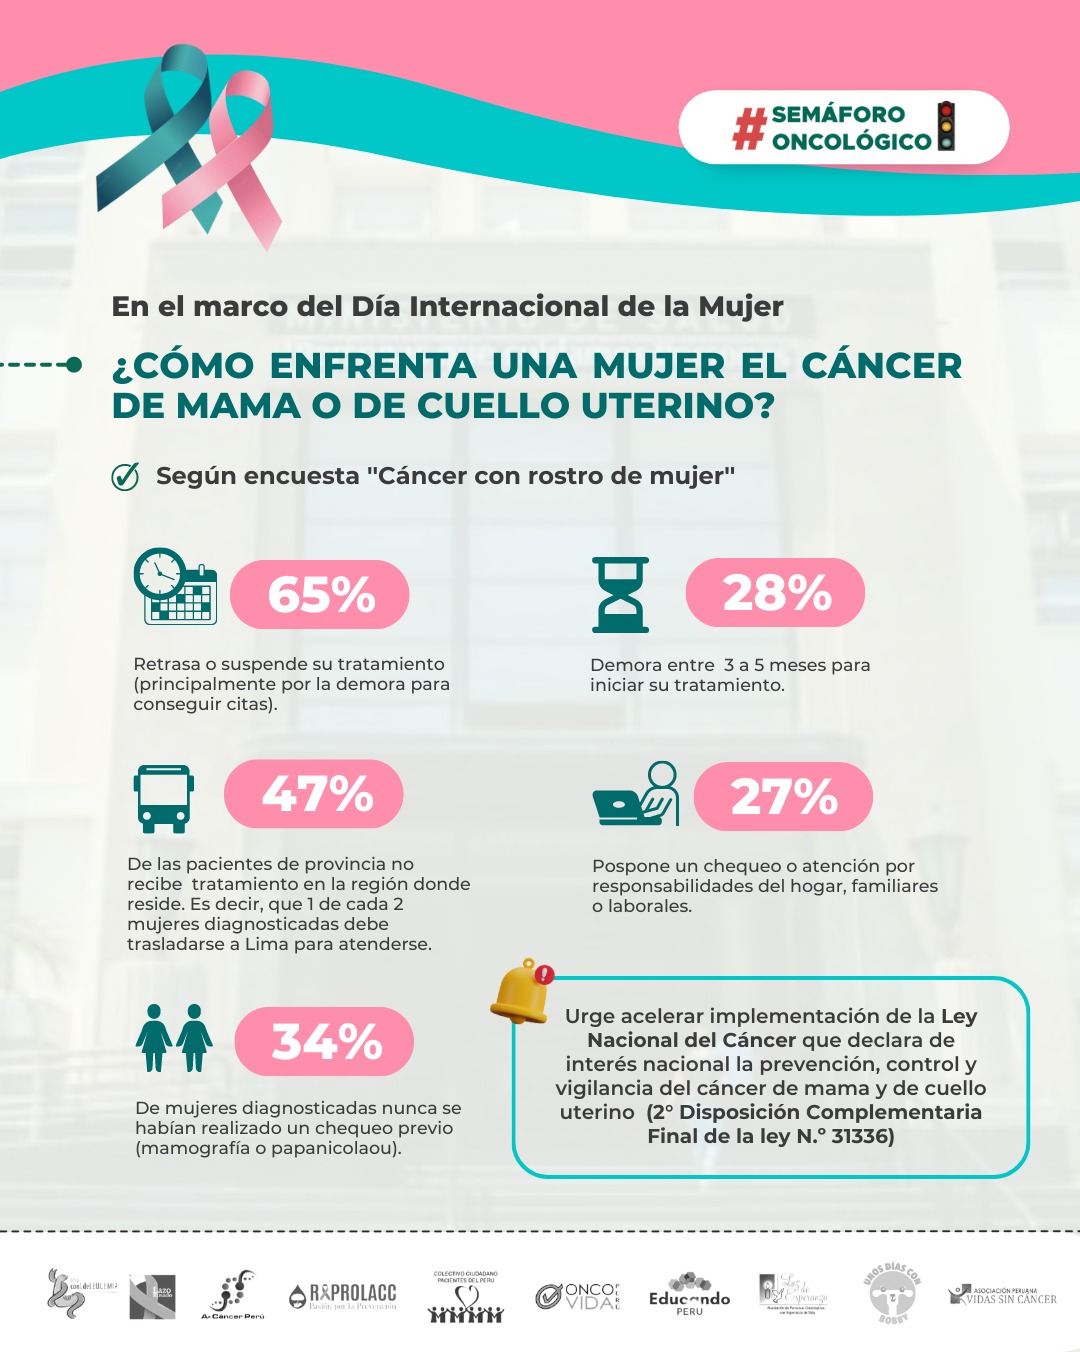 Semáforo Oncológico: 65% de pacientes con cáncer de mama o cuello uterino retrasa o interrumpe su tratamiento